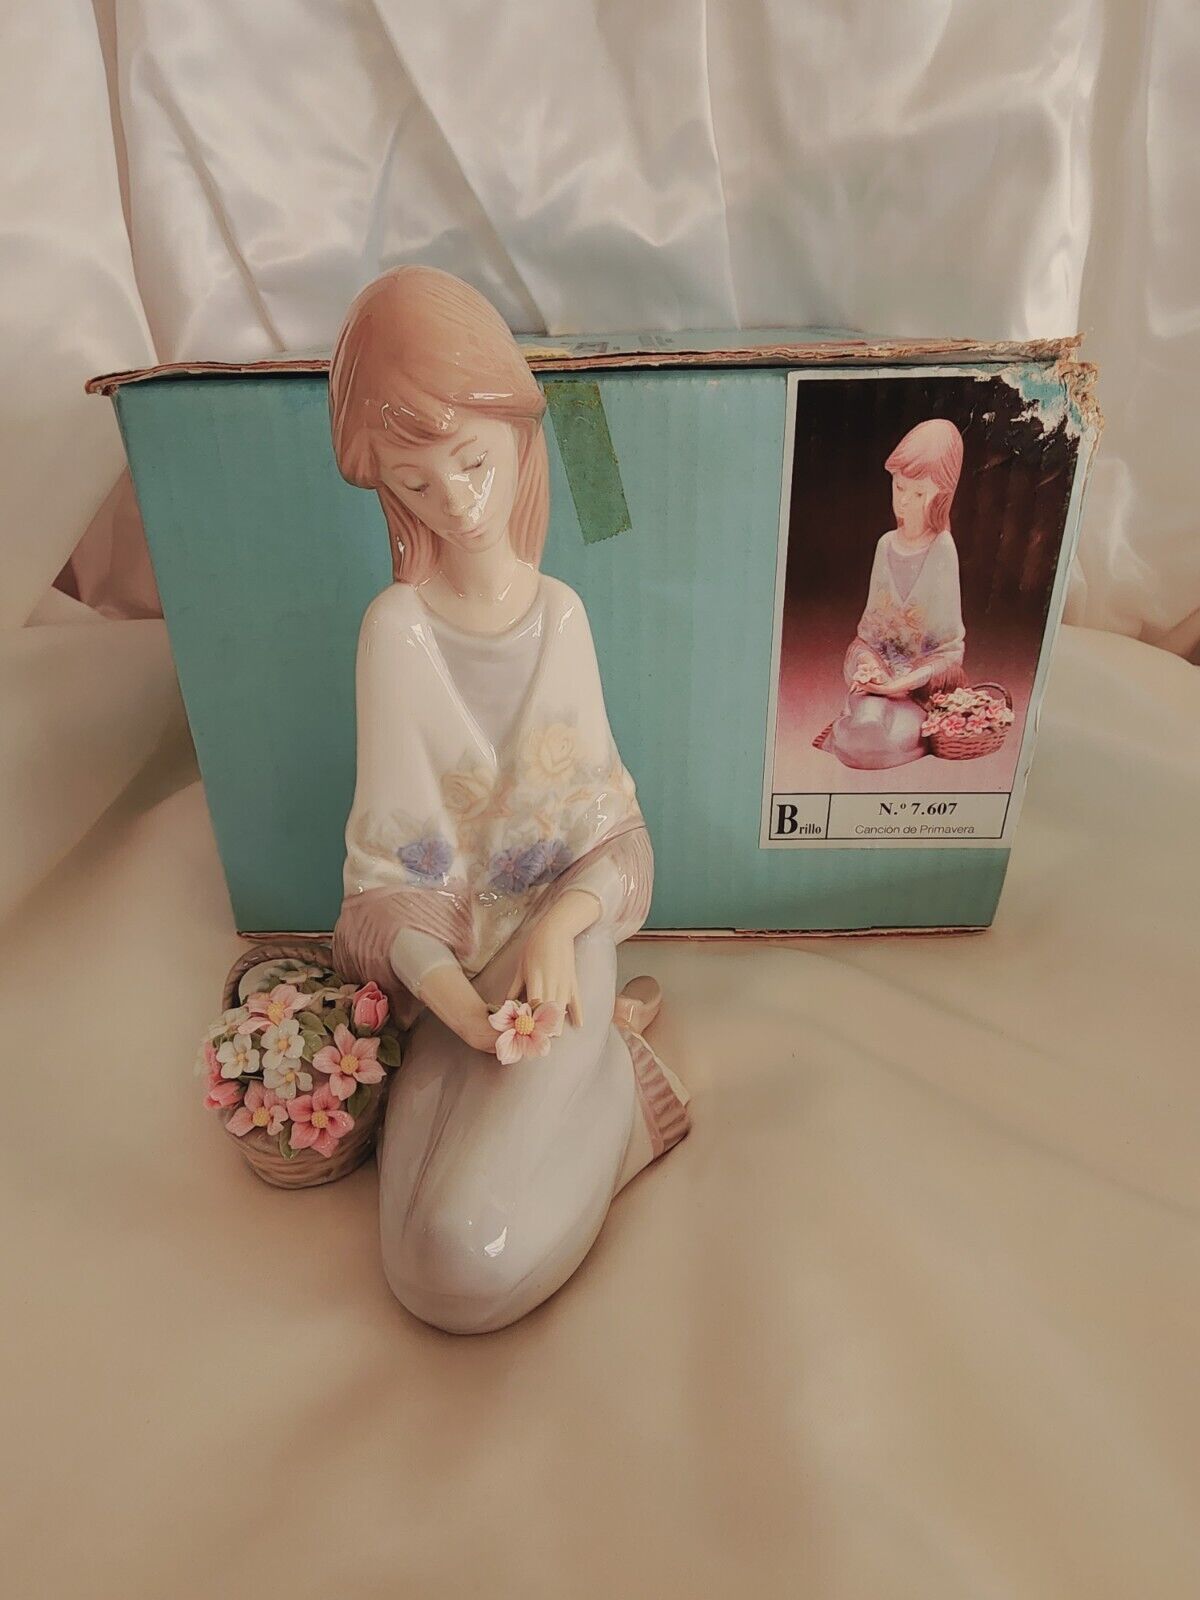 LLADRO Cancion de Primavera 7607 Flower Song Figurine 1988 Original Box